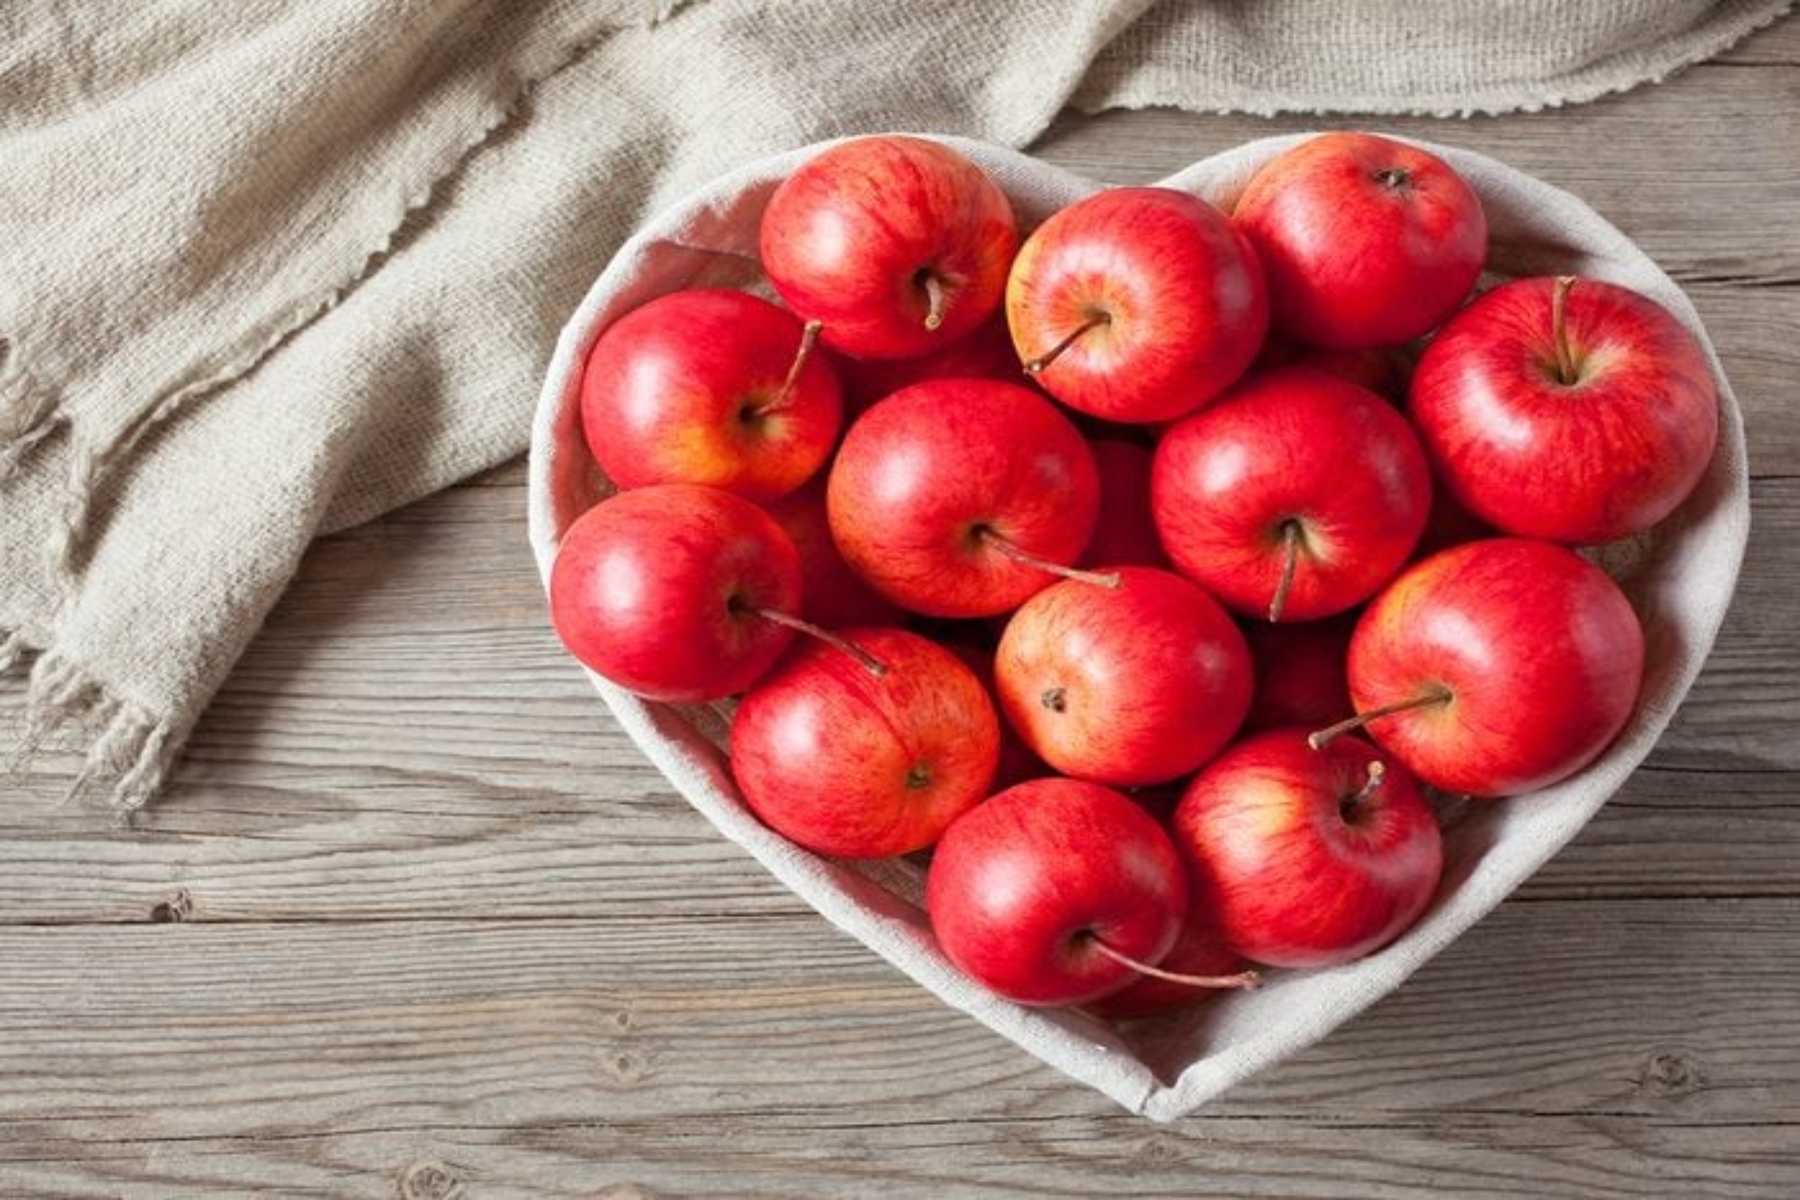 Μήλα: Πολύτιμα φρούτα με πολλά οφέλη για την υγεία μας